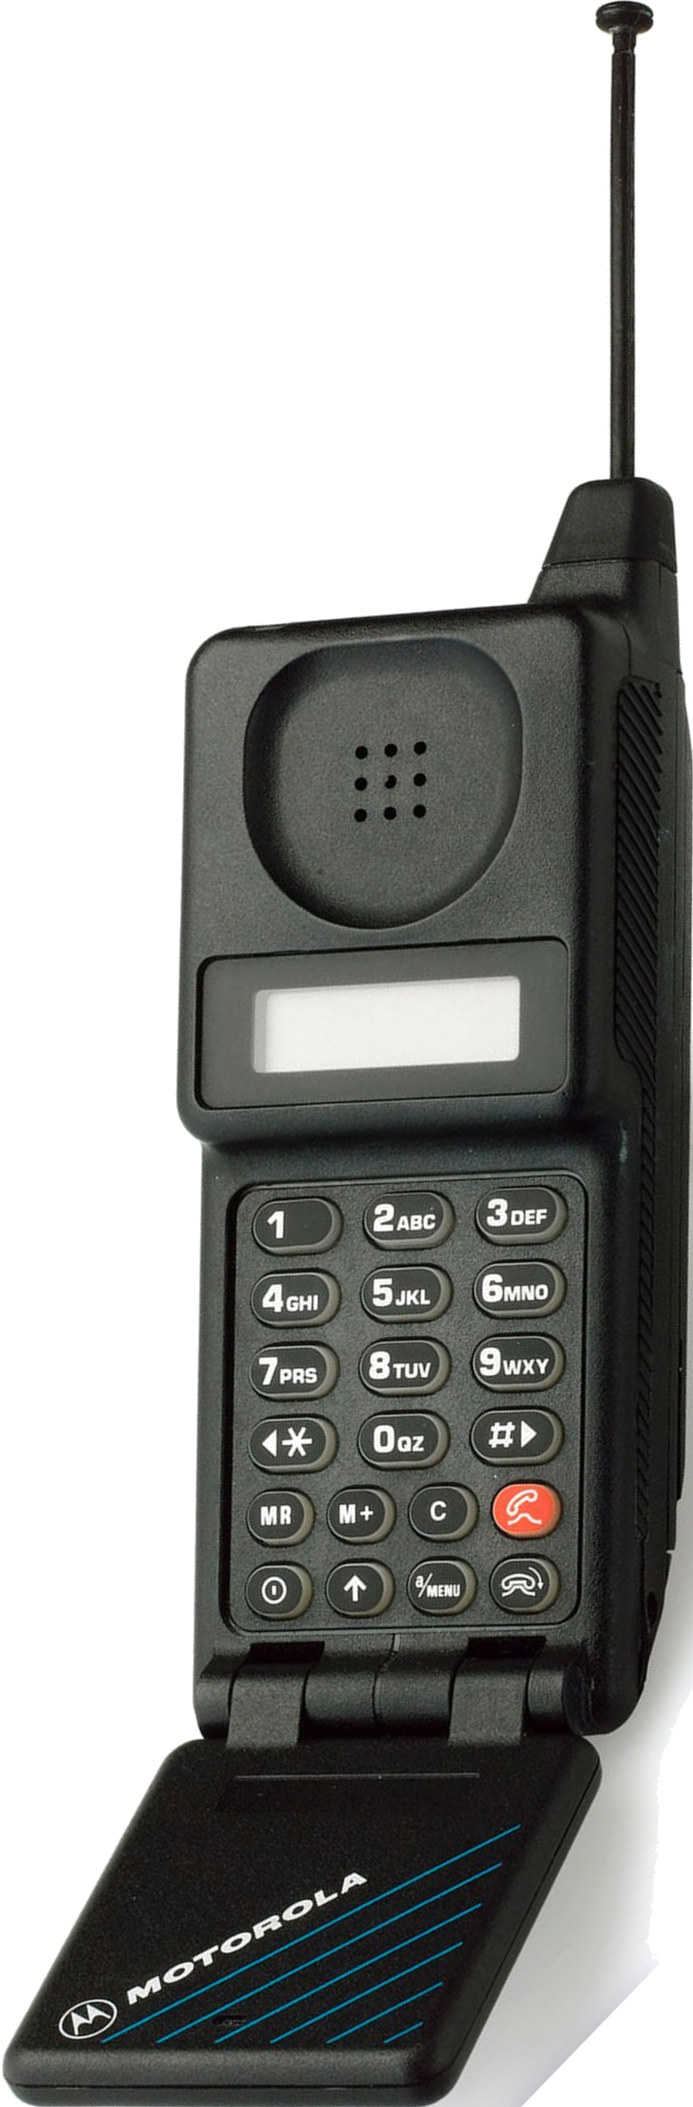 Motorola MicroTAC 9800x Mobile Phone